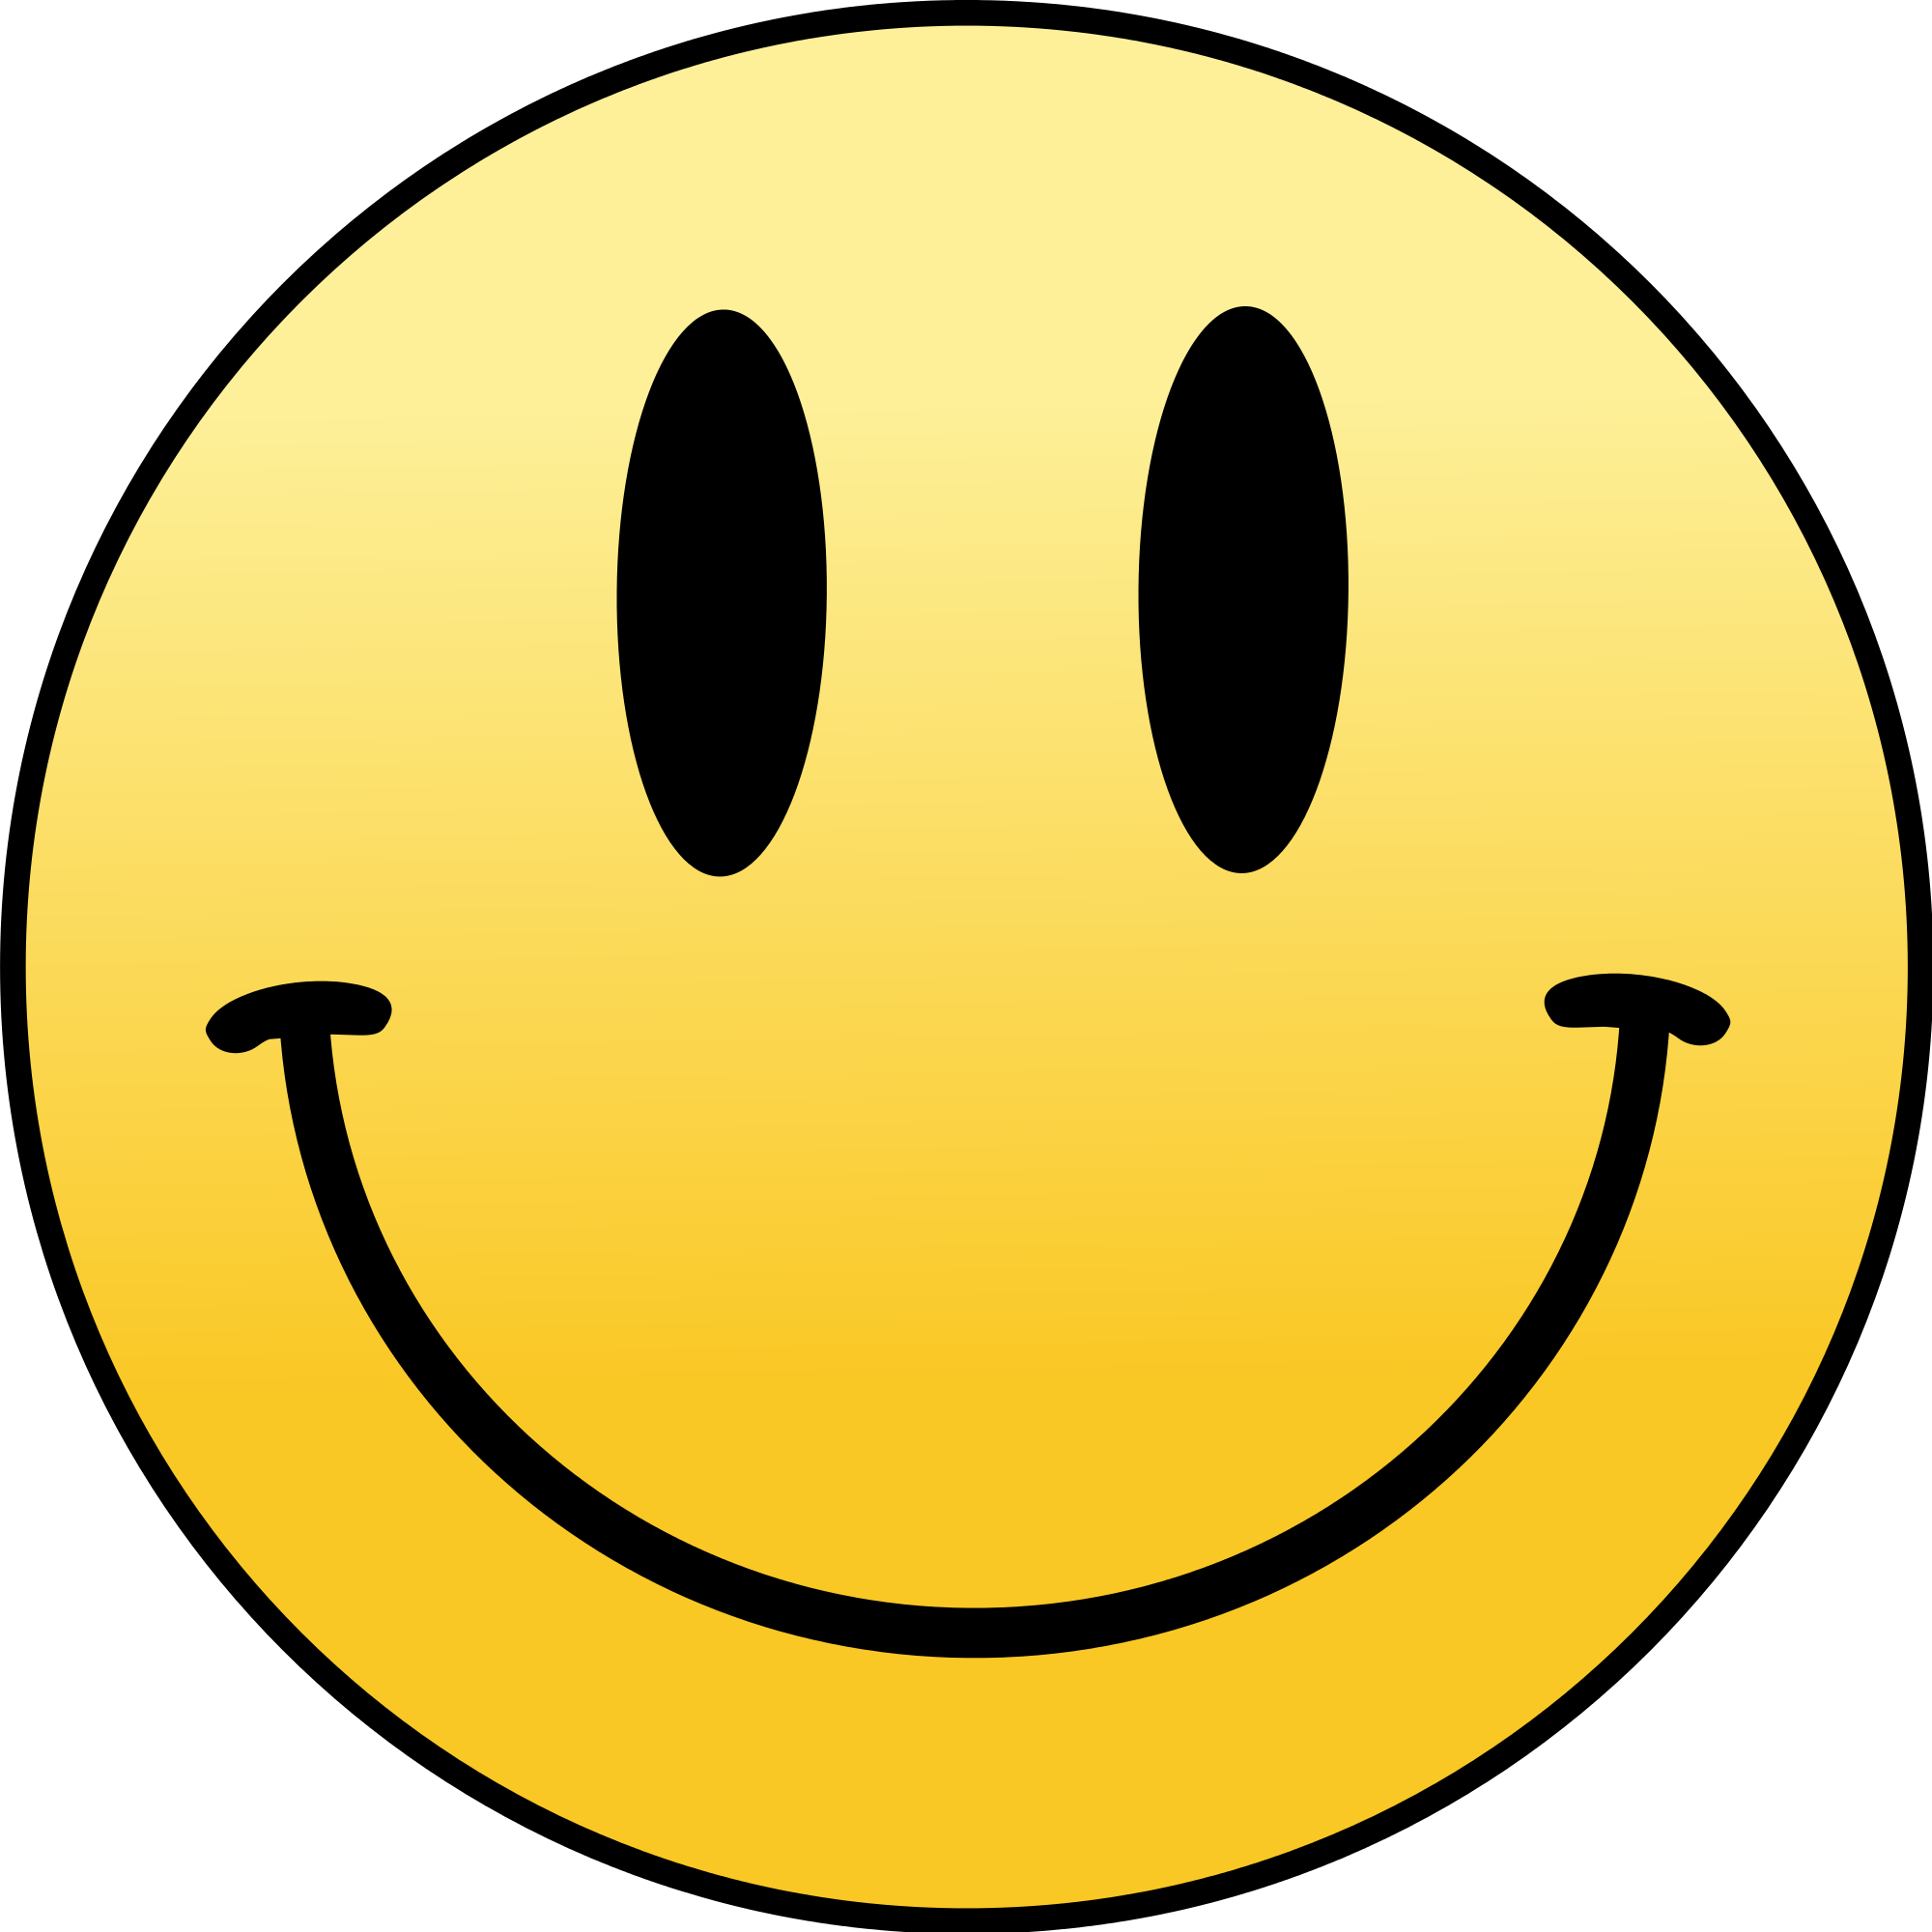 Smiley Faces Free Download - KibrisPDR